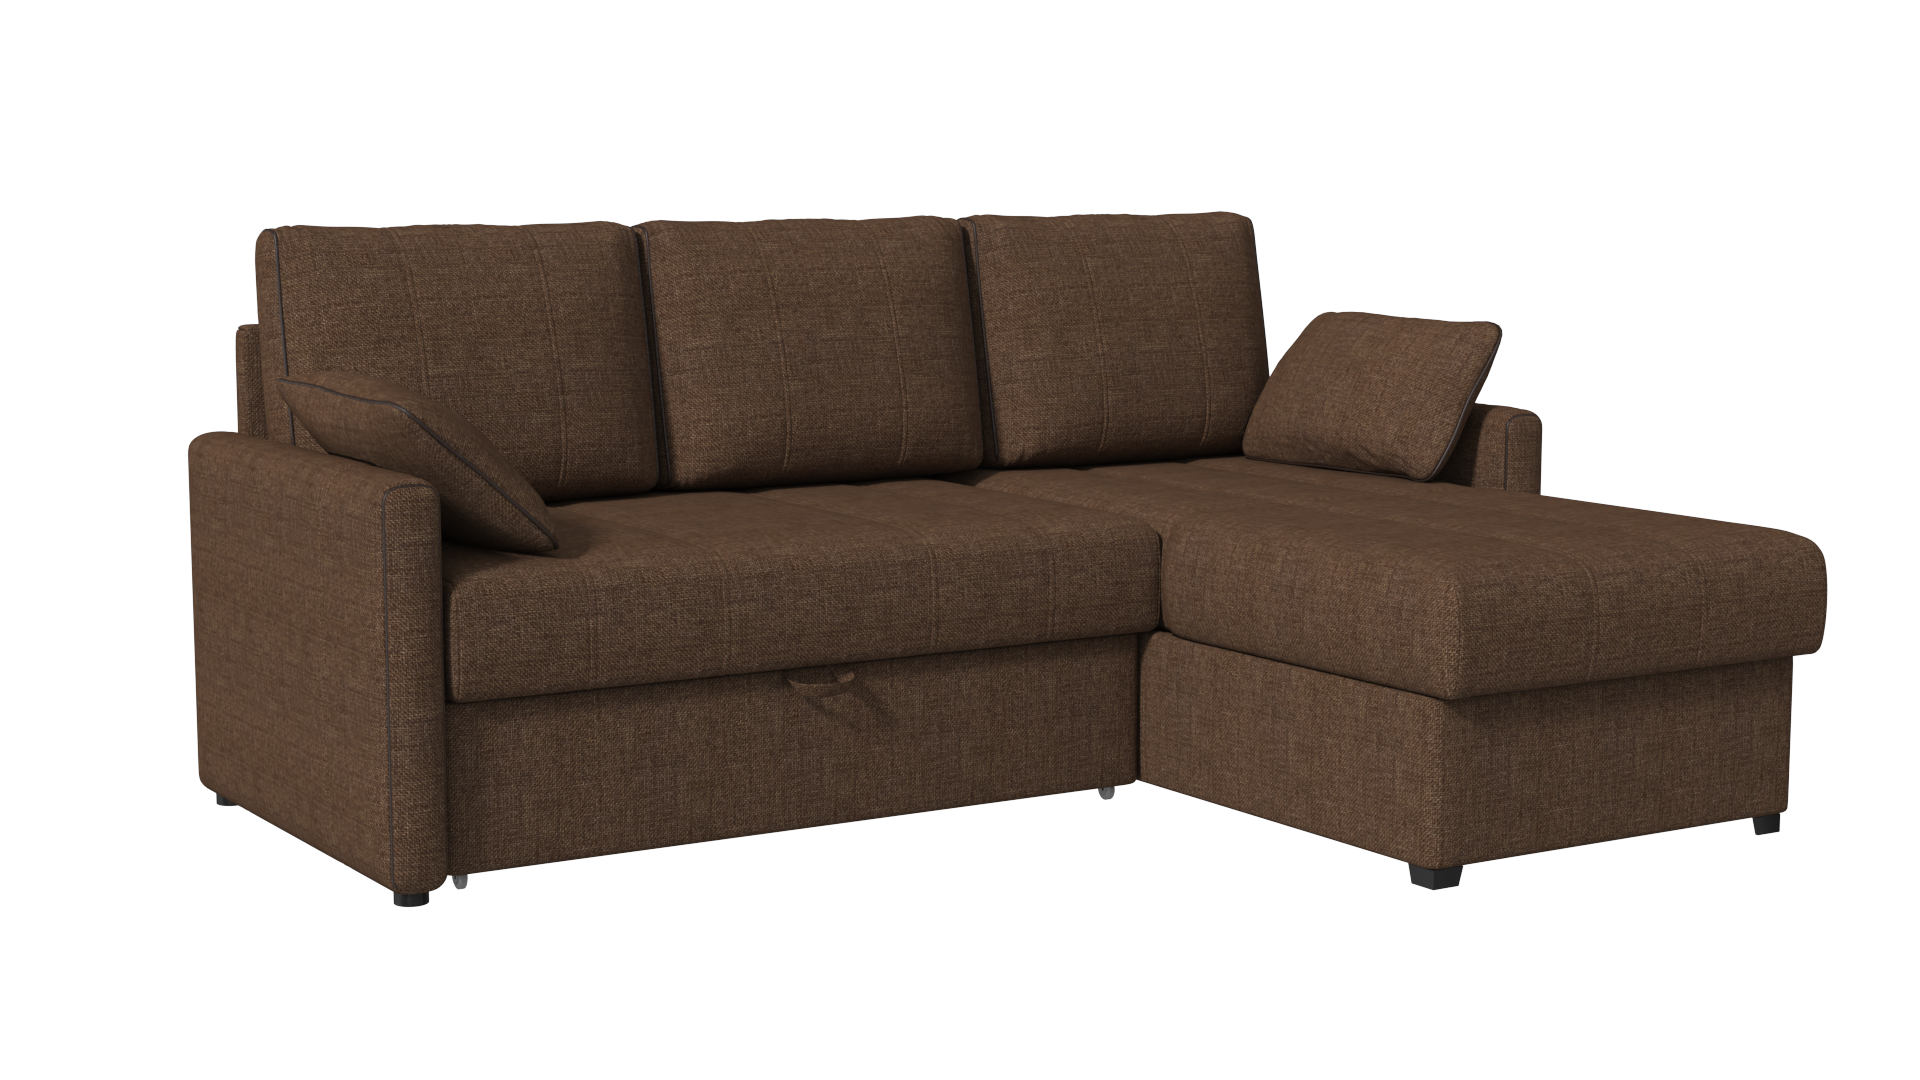 Угловой диван Римини 11 в Москве - Купить за дешево от производителя № ➀DIHALL® в интернет-магазине. Ширина спального места